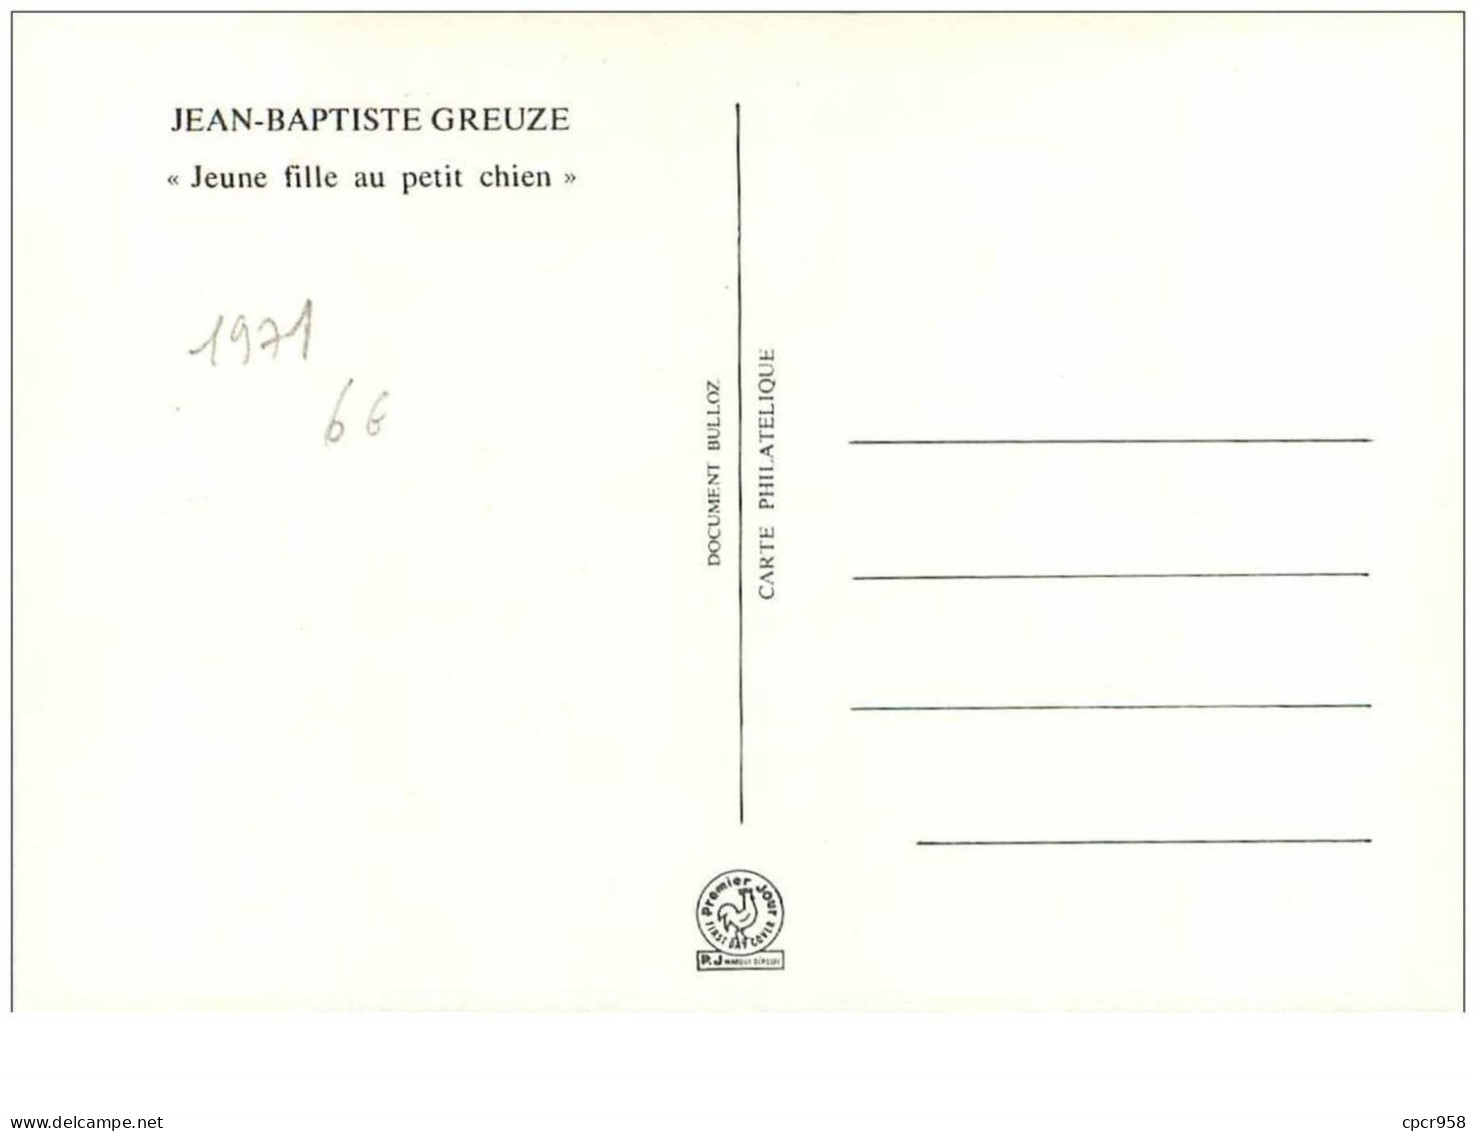 CROIX-ROUGE.n°28543.JEAN BAPTISTE GREUZE."JEUNE FILLE AU PETIT CHIEN".1971.CARTE MAXIMUM. - Croce Rossa